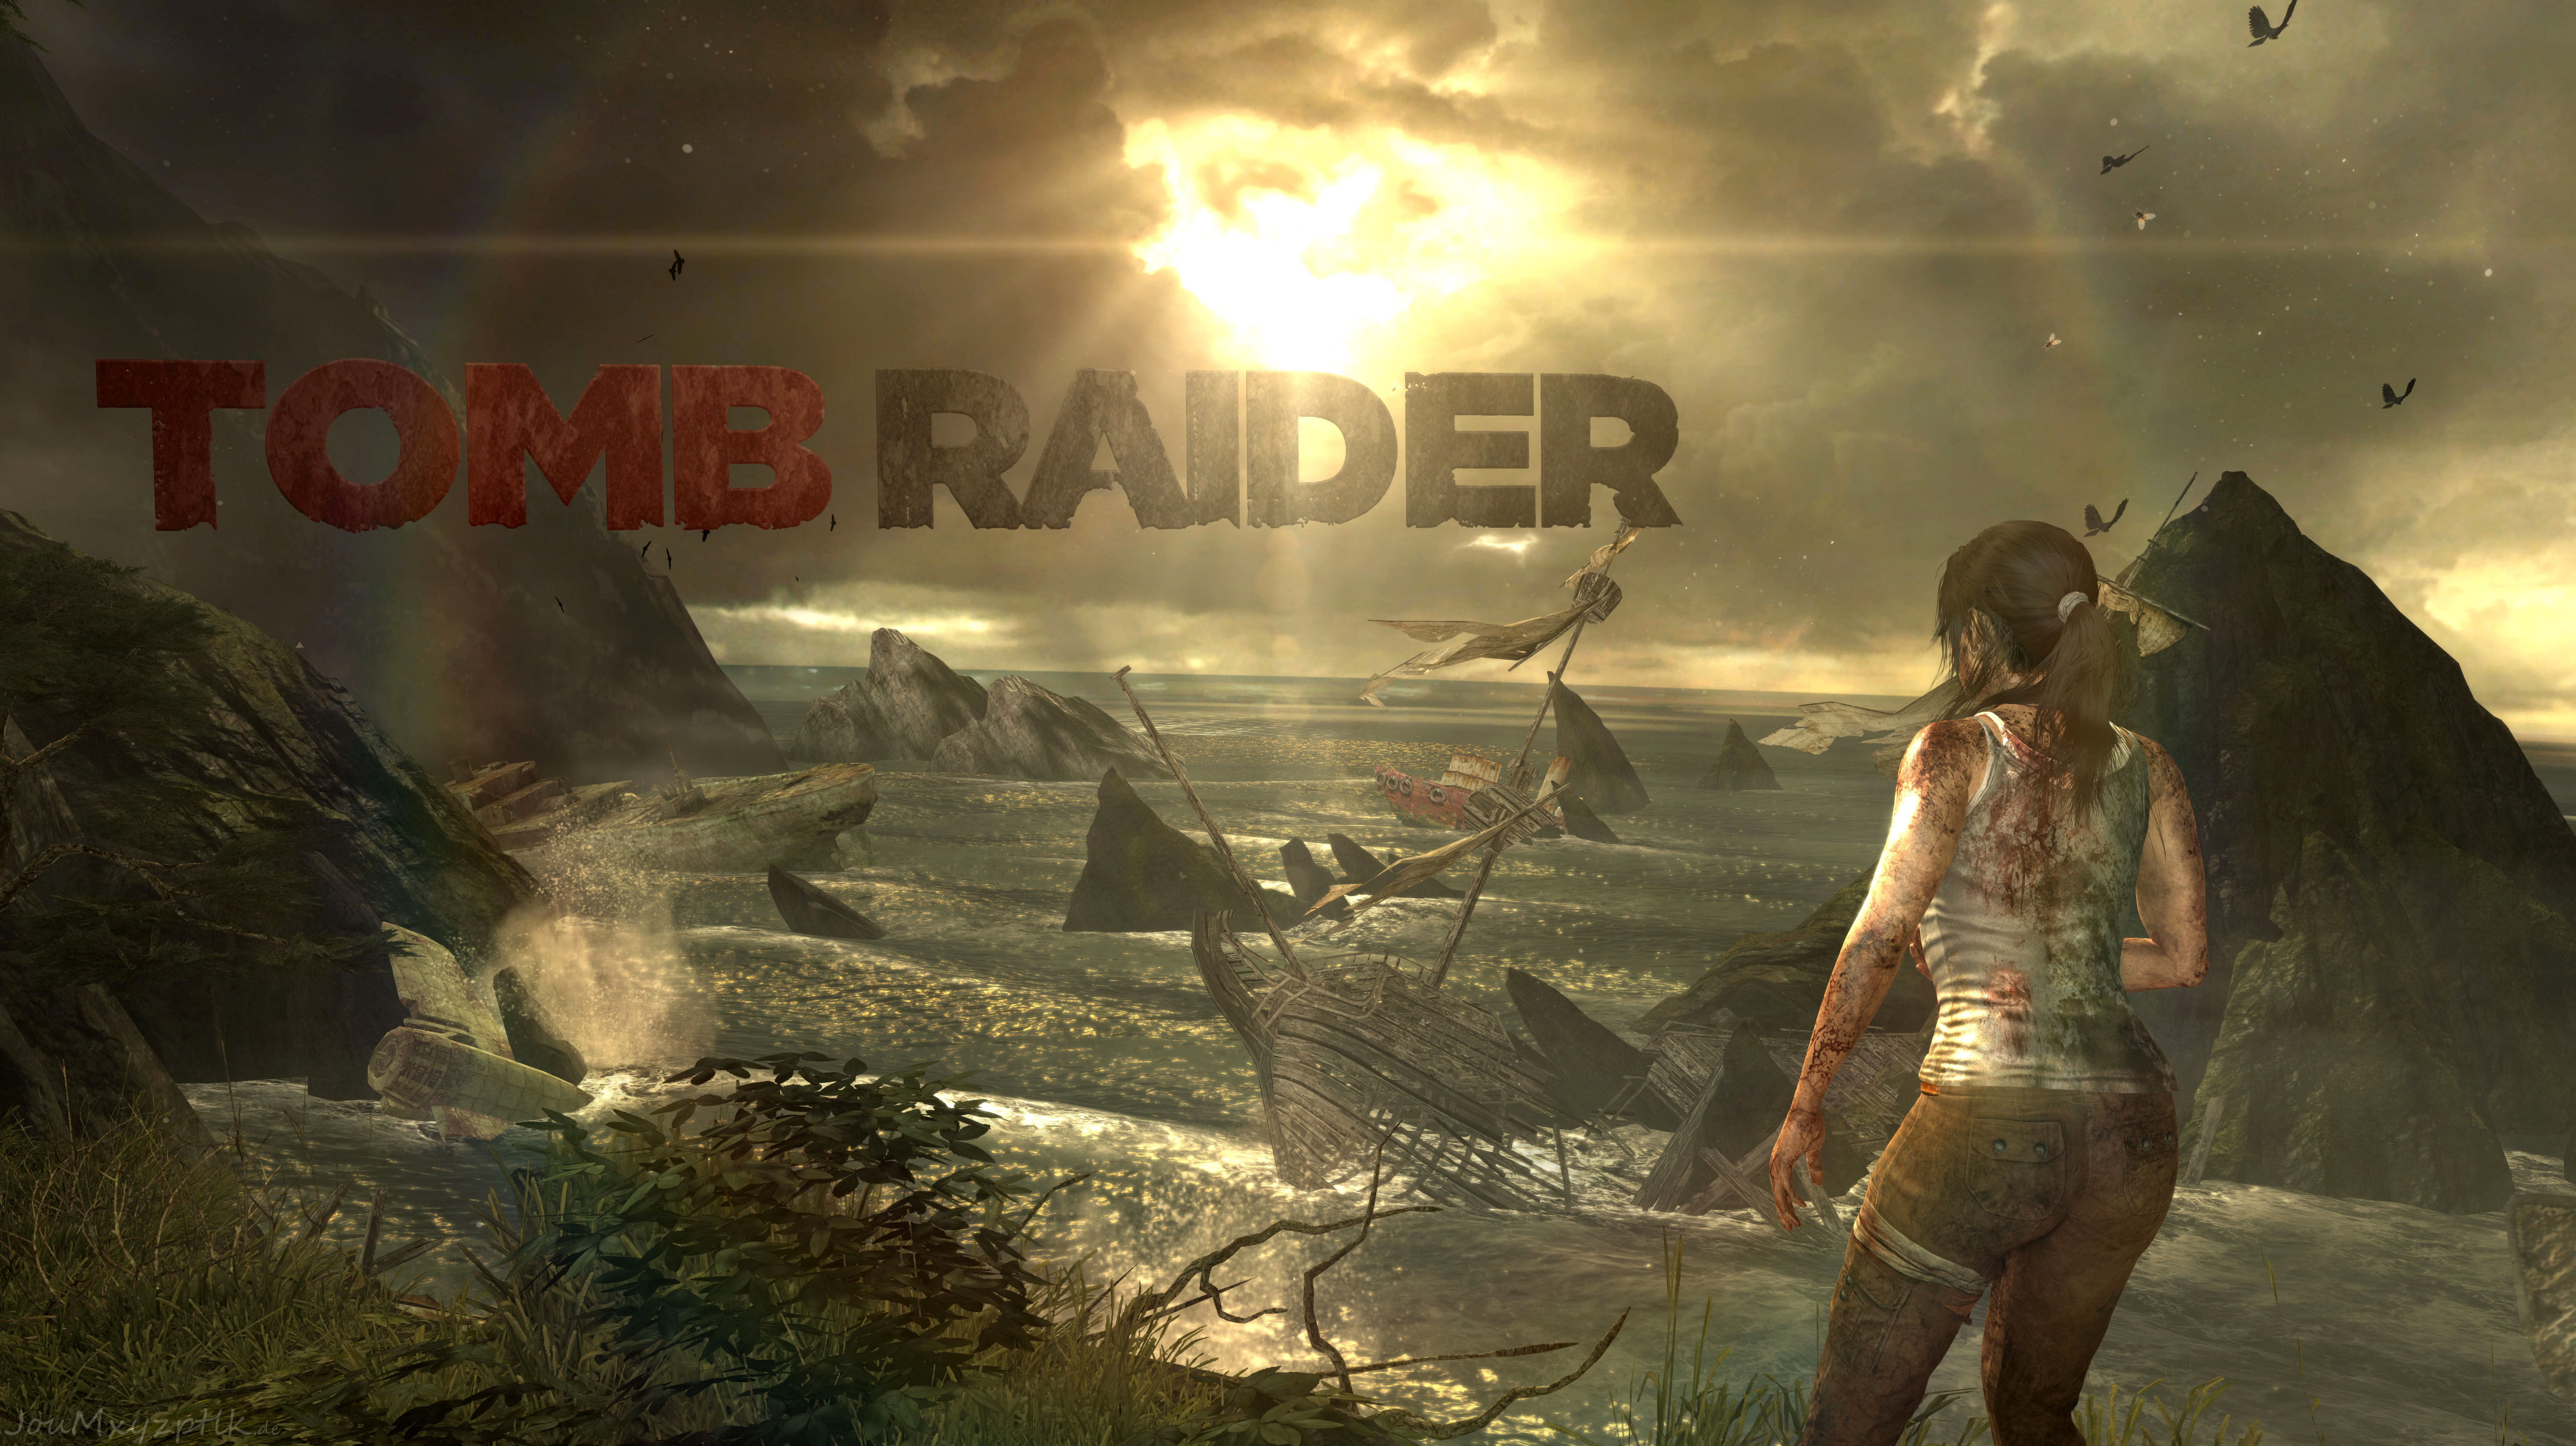 Игры натура. Томб Райдер игра 2013. Tomb Raider: игра новая 2013. Томб Райдер 11.